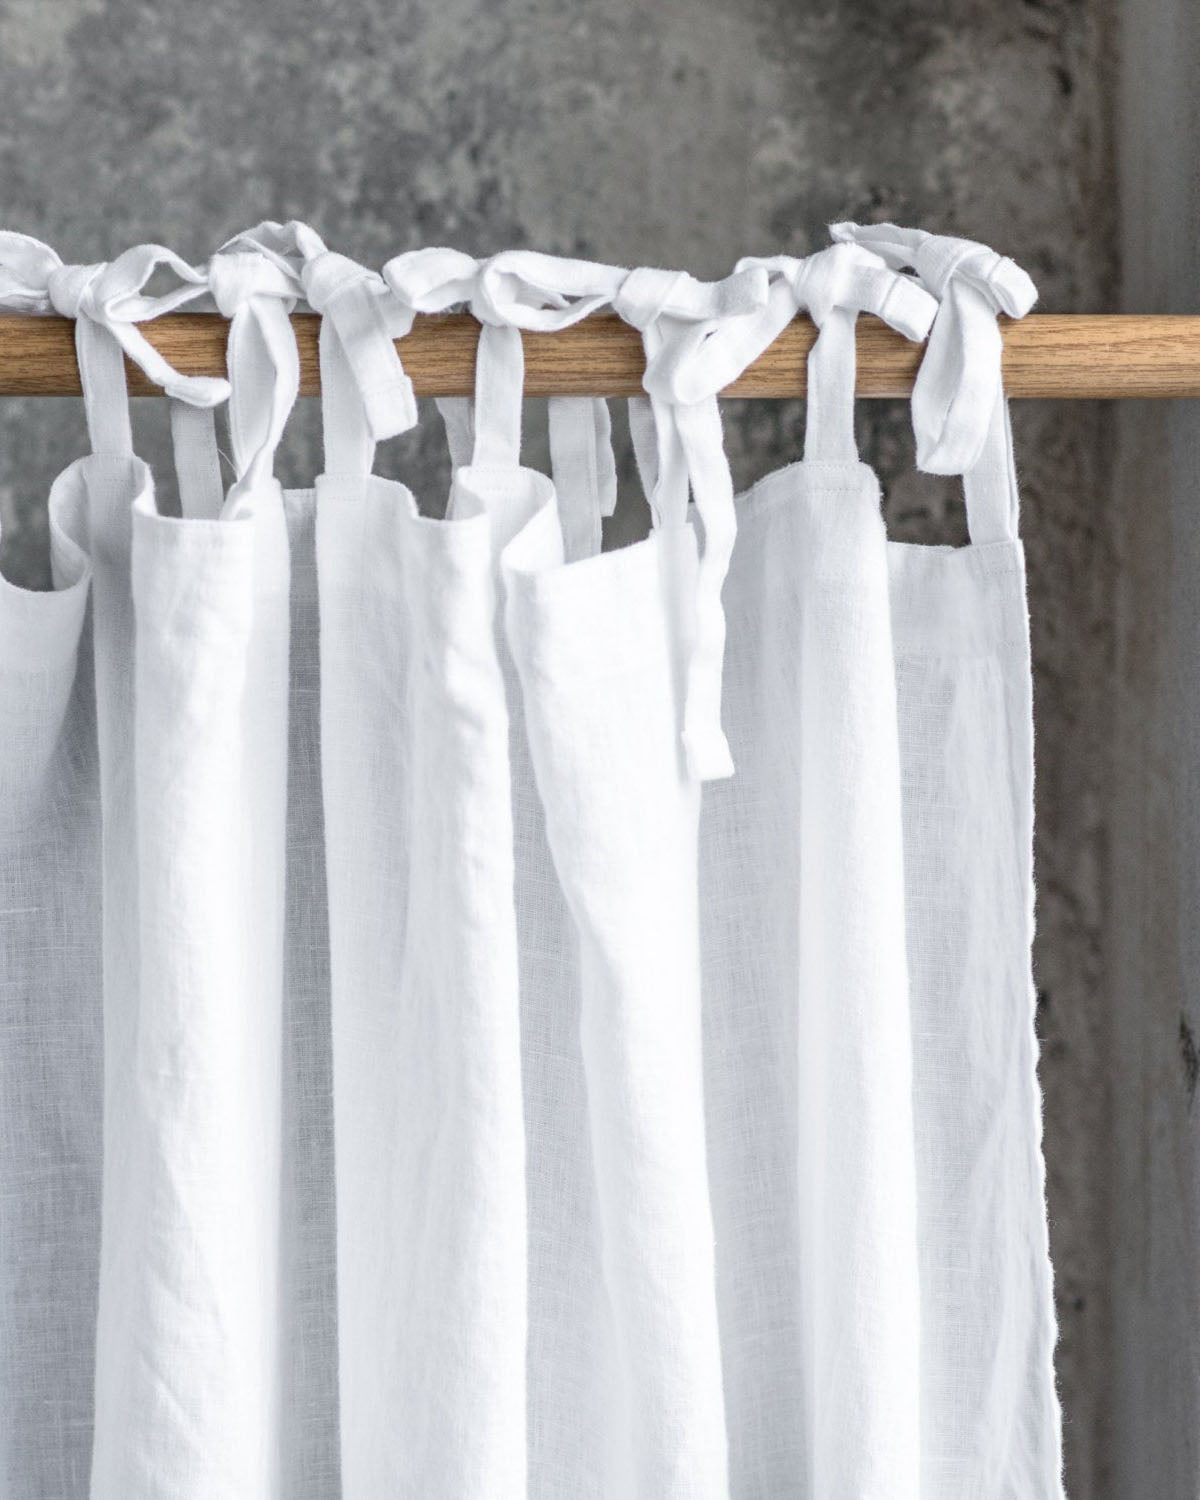 notPERFECTLINEN-Linen-Curtains-White